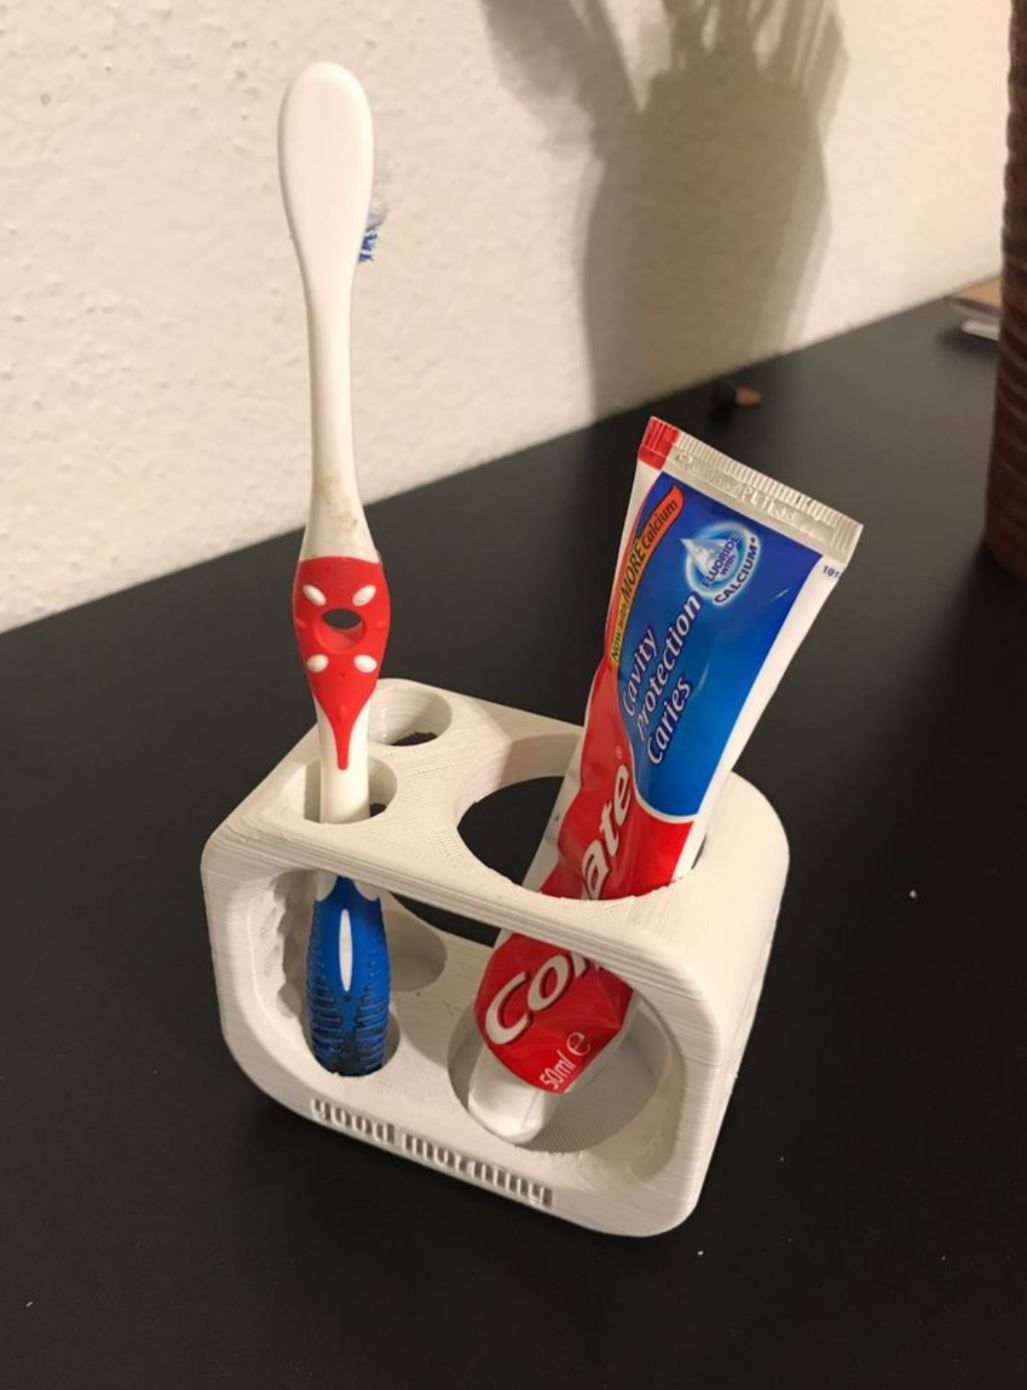 Soporte para dos cepillos de dientes y pasta dentífrica